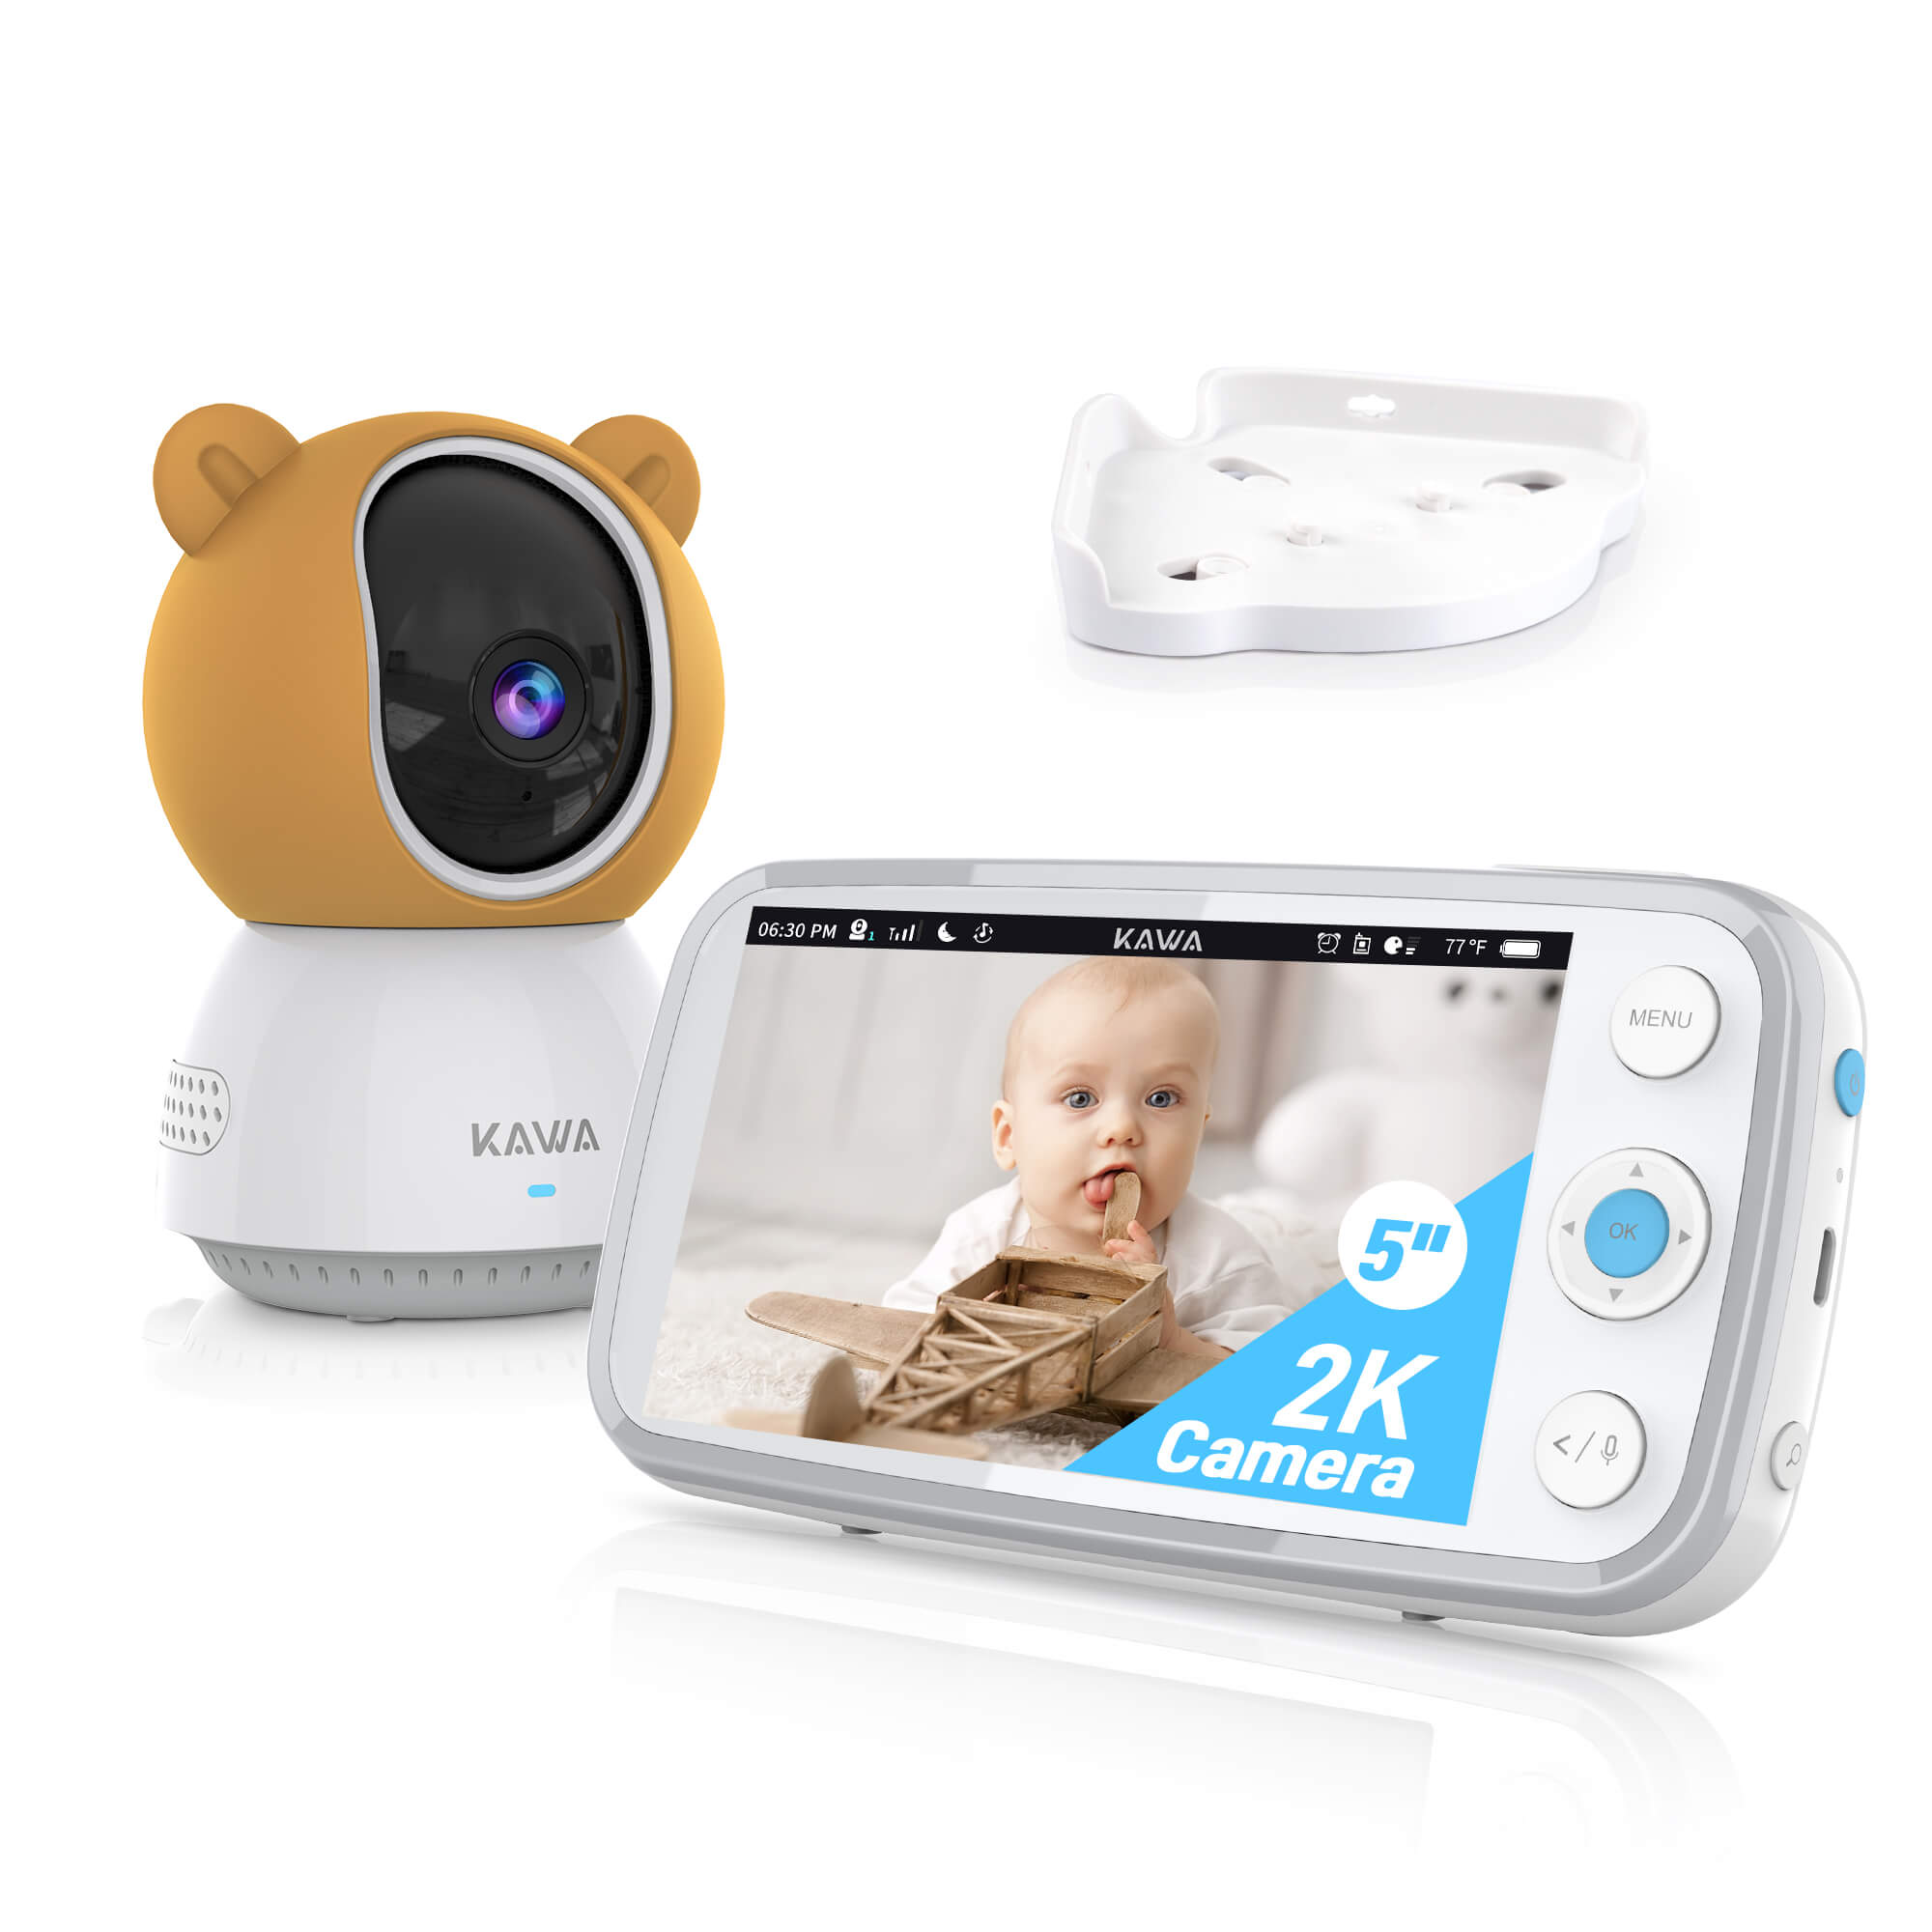 KAWA S7 | Baby Monitor with Camera and Audio - 2K QHD 5